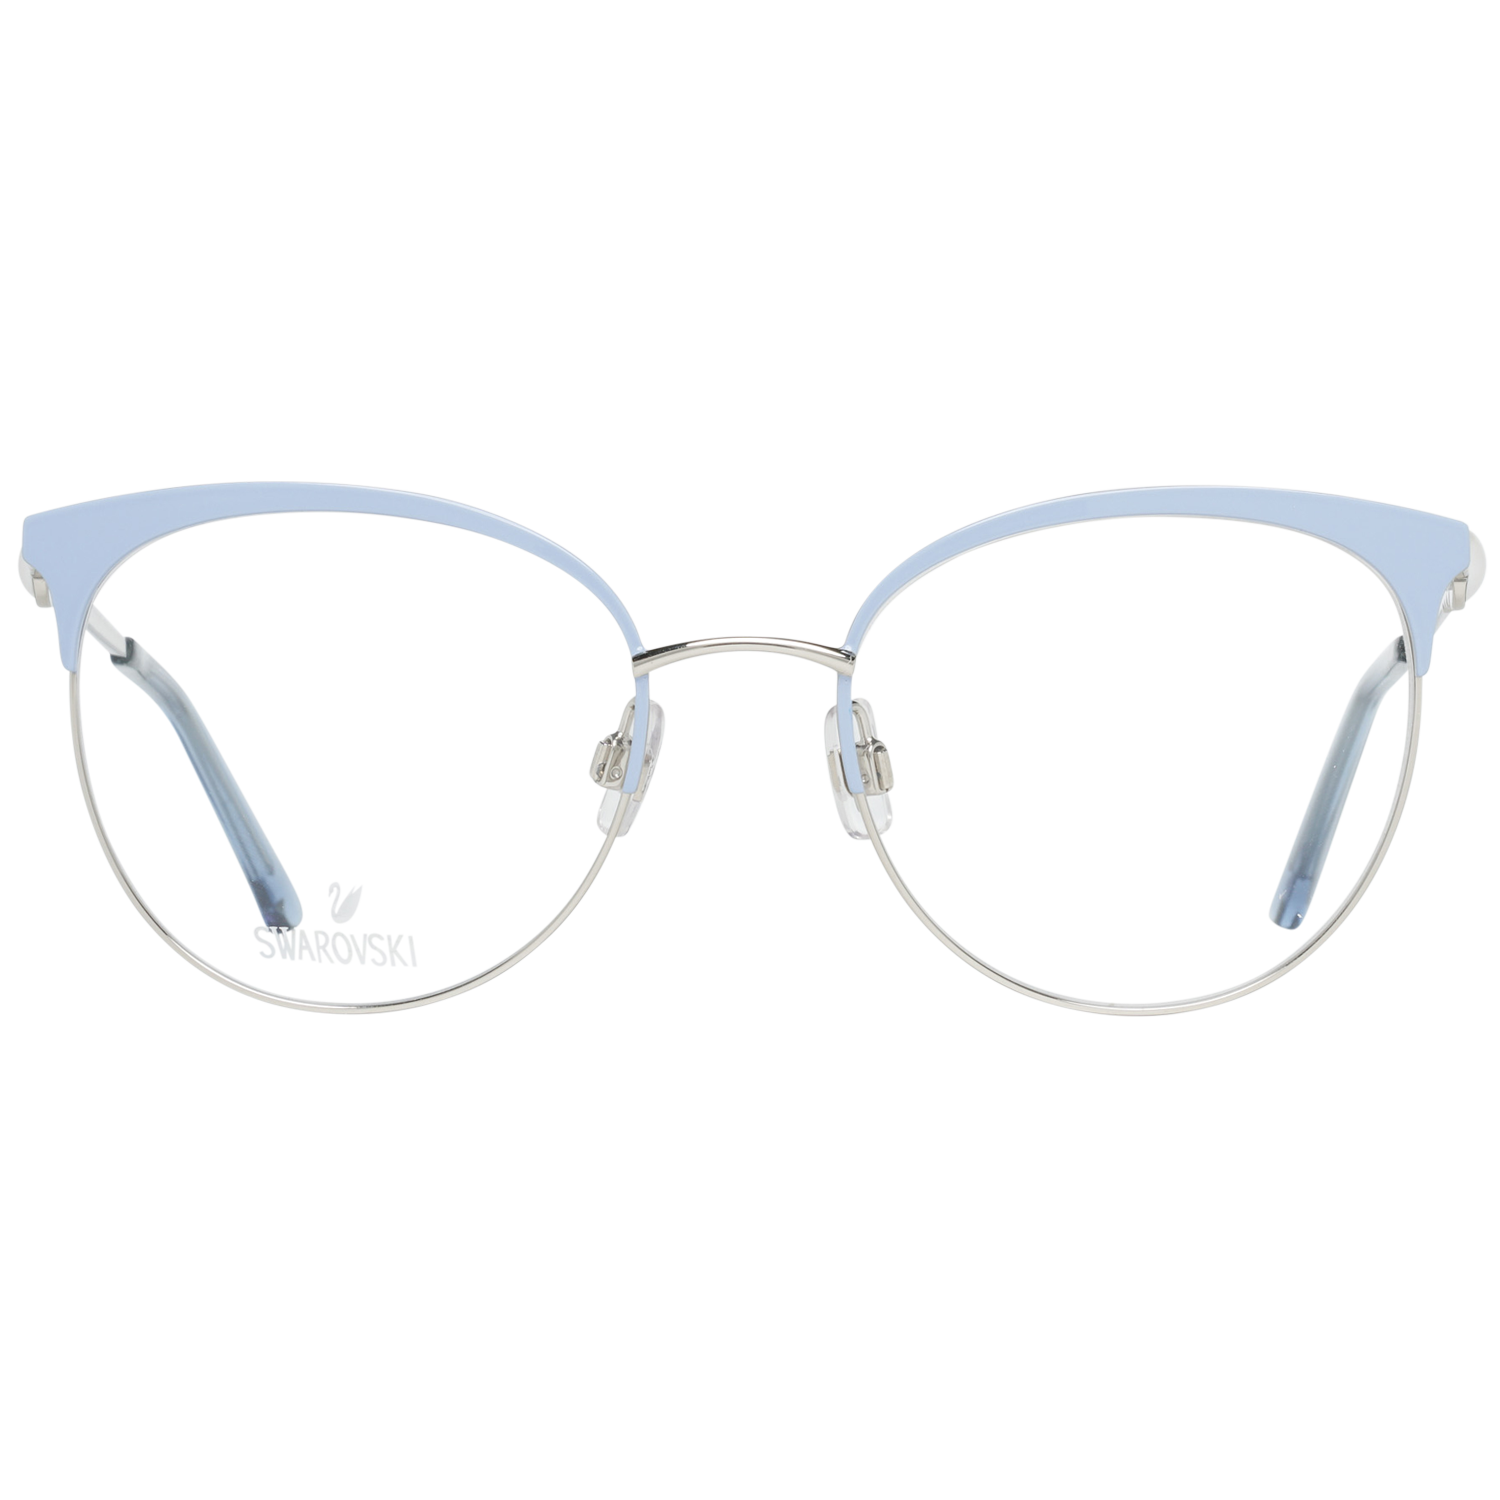 Swarovski Frames Swarovski Women Glasses Optical Frame SK5275 B16 51 Eyeglasses Eyewear UK USA Australia 